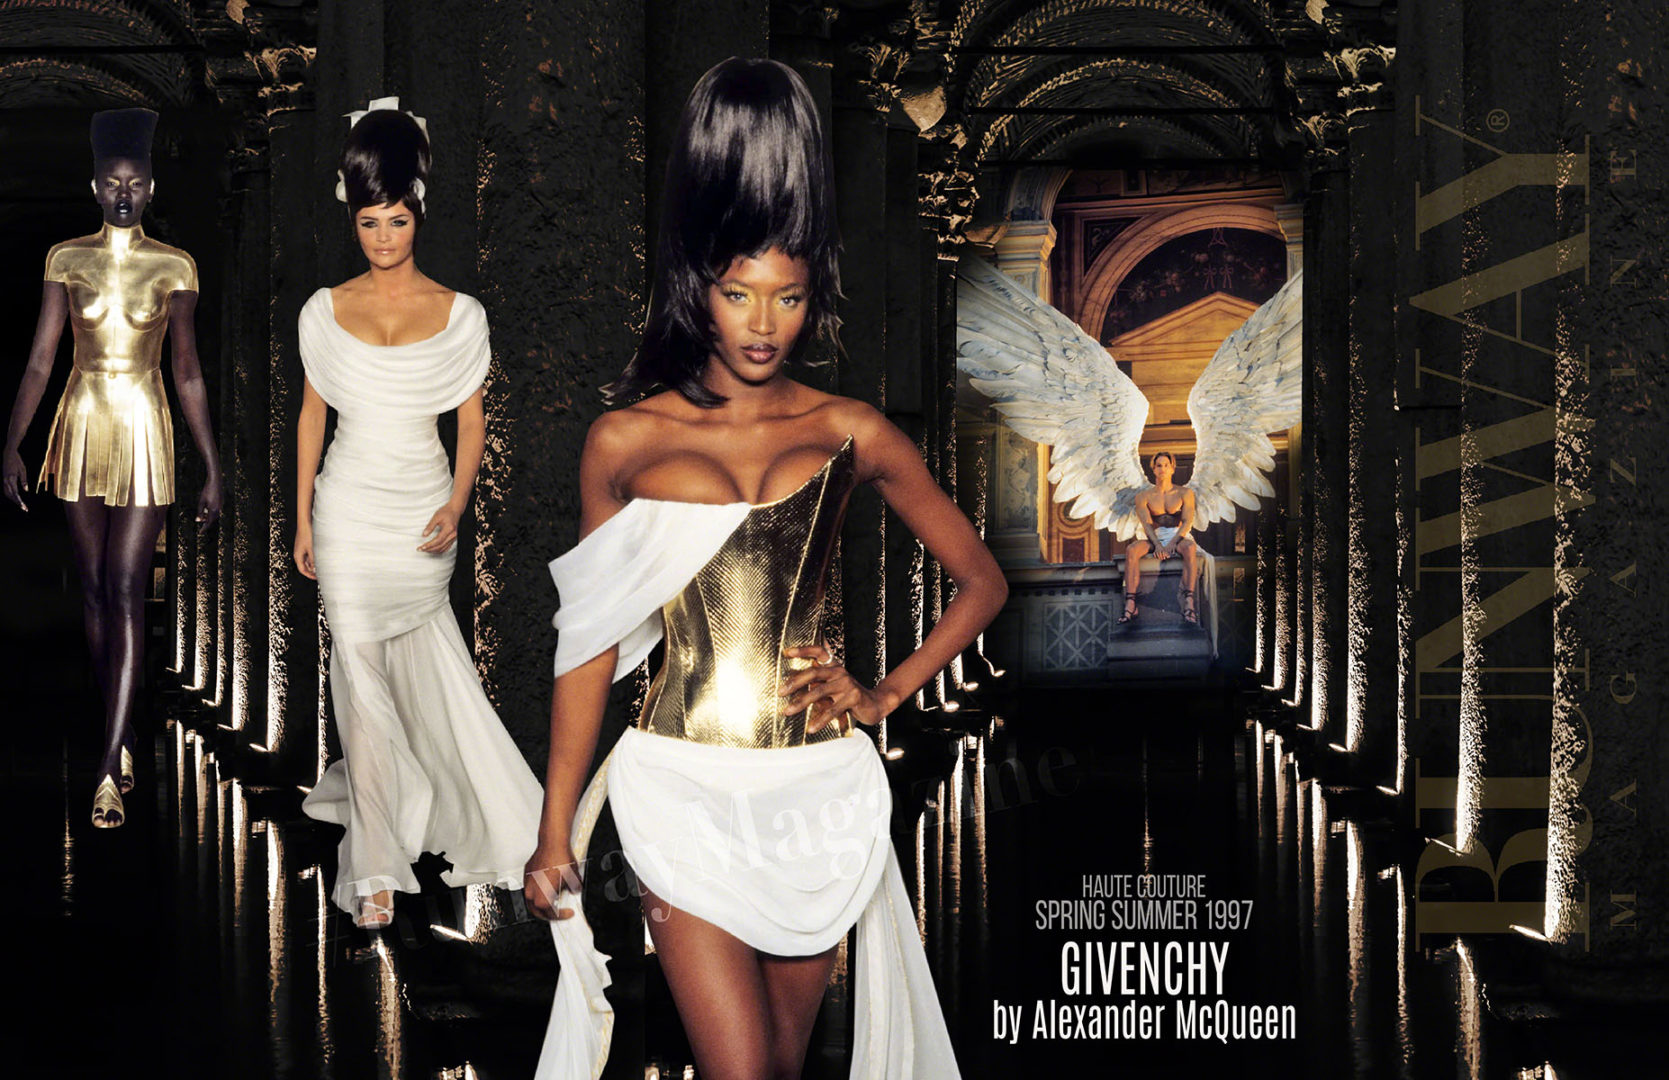 Alexander McQueen en Givenchy - Enrique Ortega Burgos